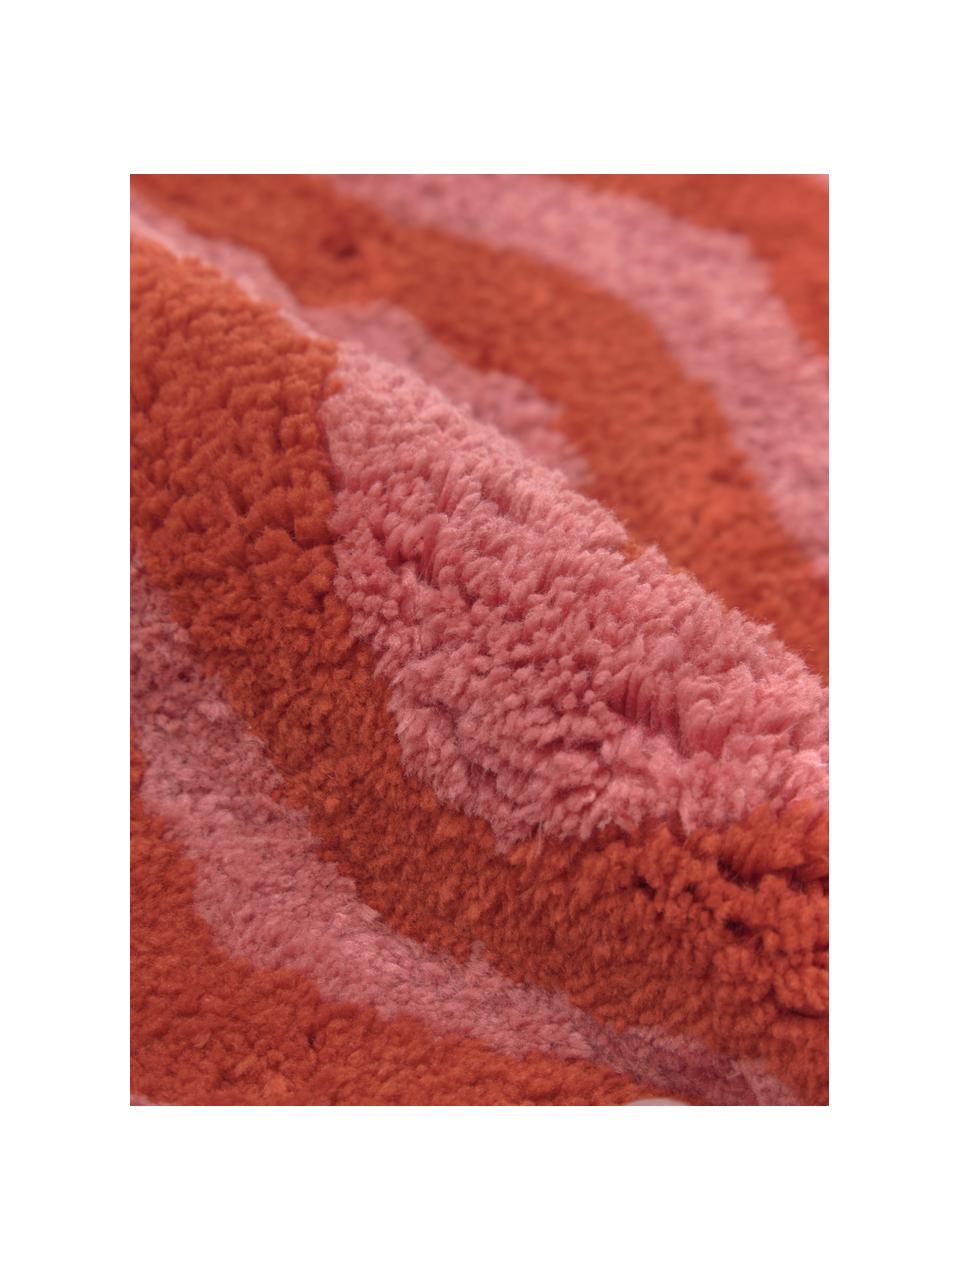 Zachte kussenhoes Gaja in rood/roze, Rood, roze, B 45 x L 45 cm